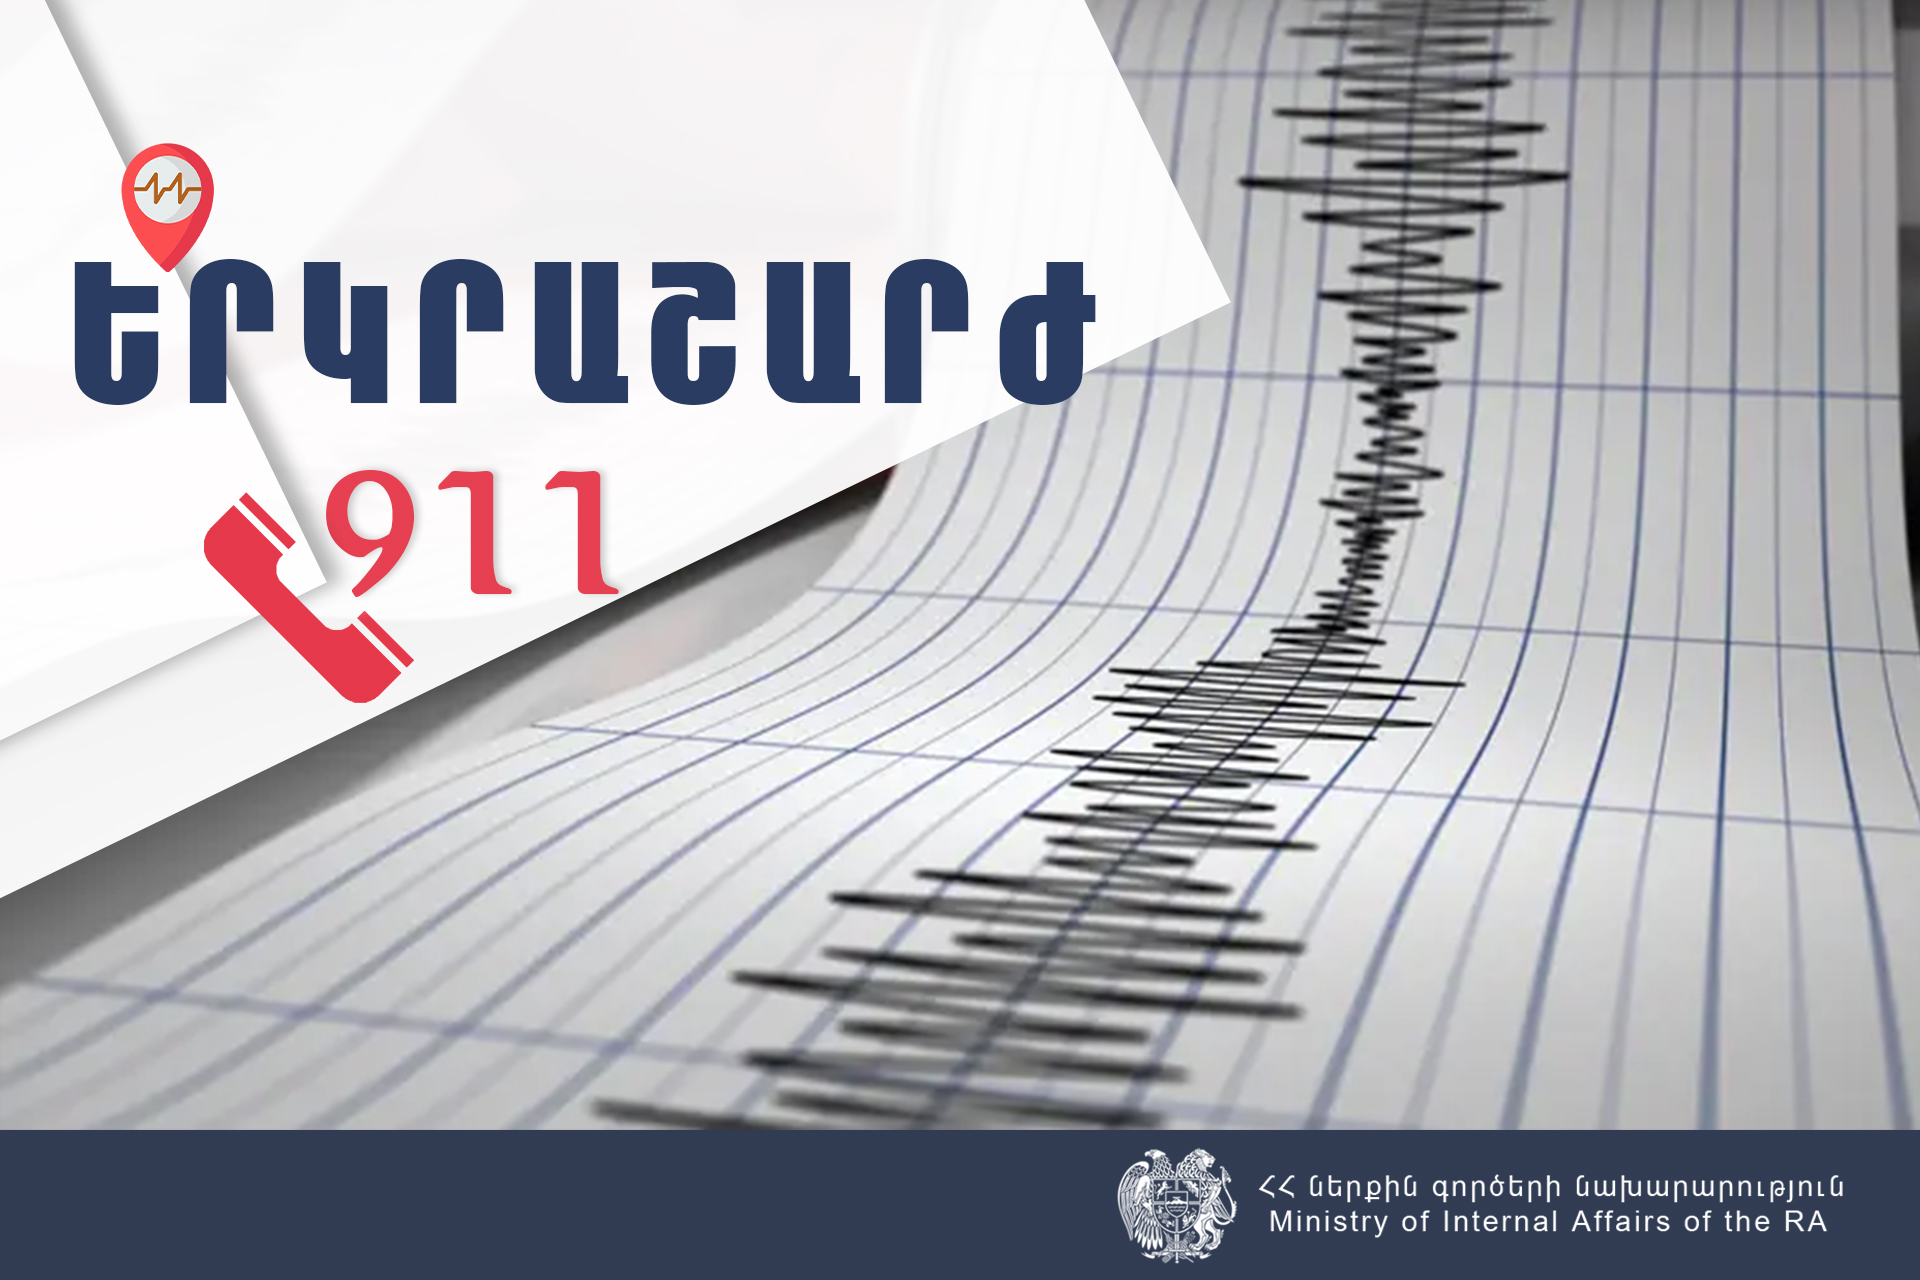 Երկրաշարժ՝ Ադրբեջանի Լենքորան քաղաքից 17 կմ հյուսիս. այն զգացվել է նաև Սյունիքում՝ 4 բալ ուժգնությամբ